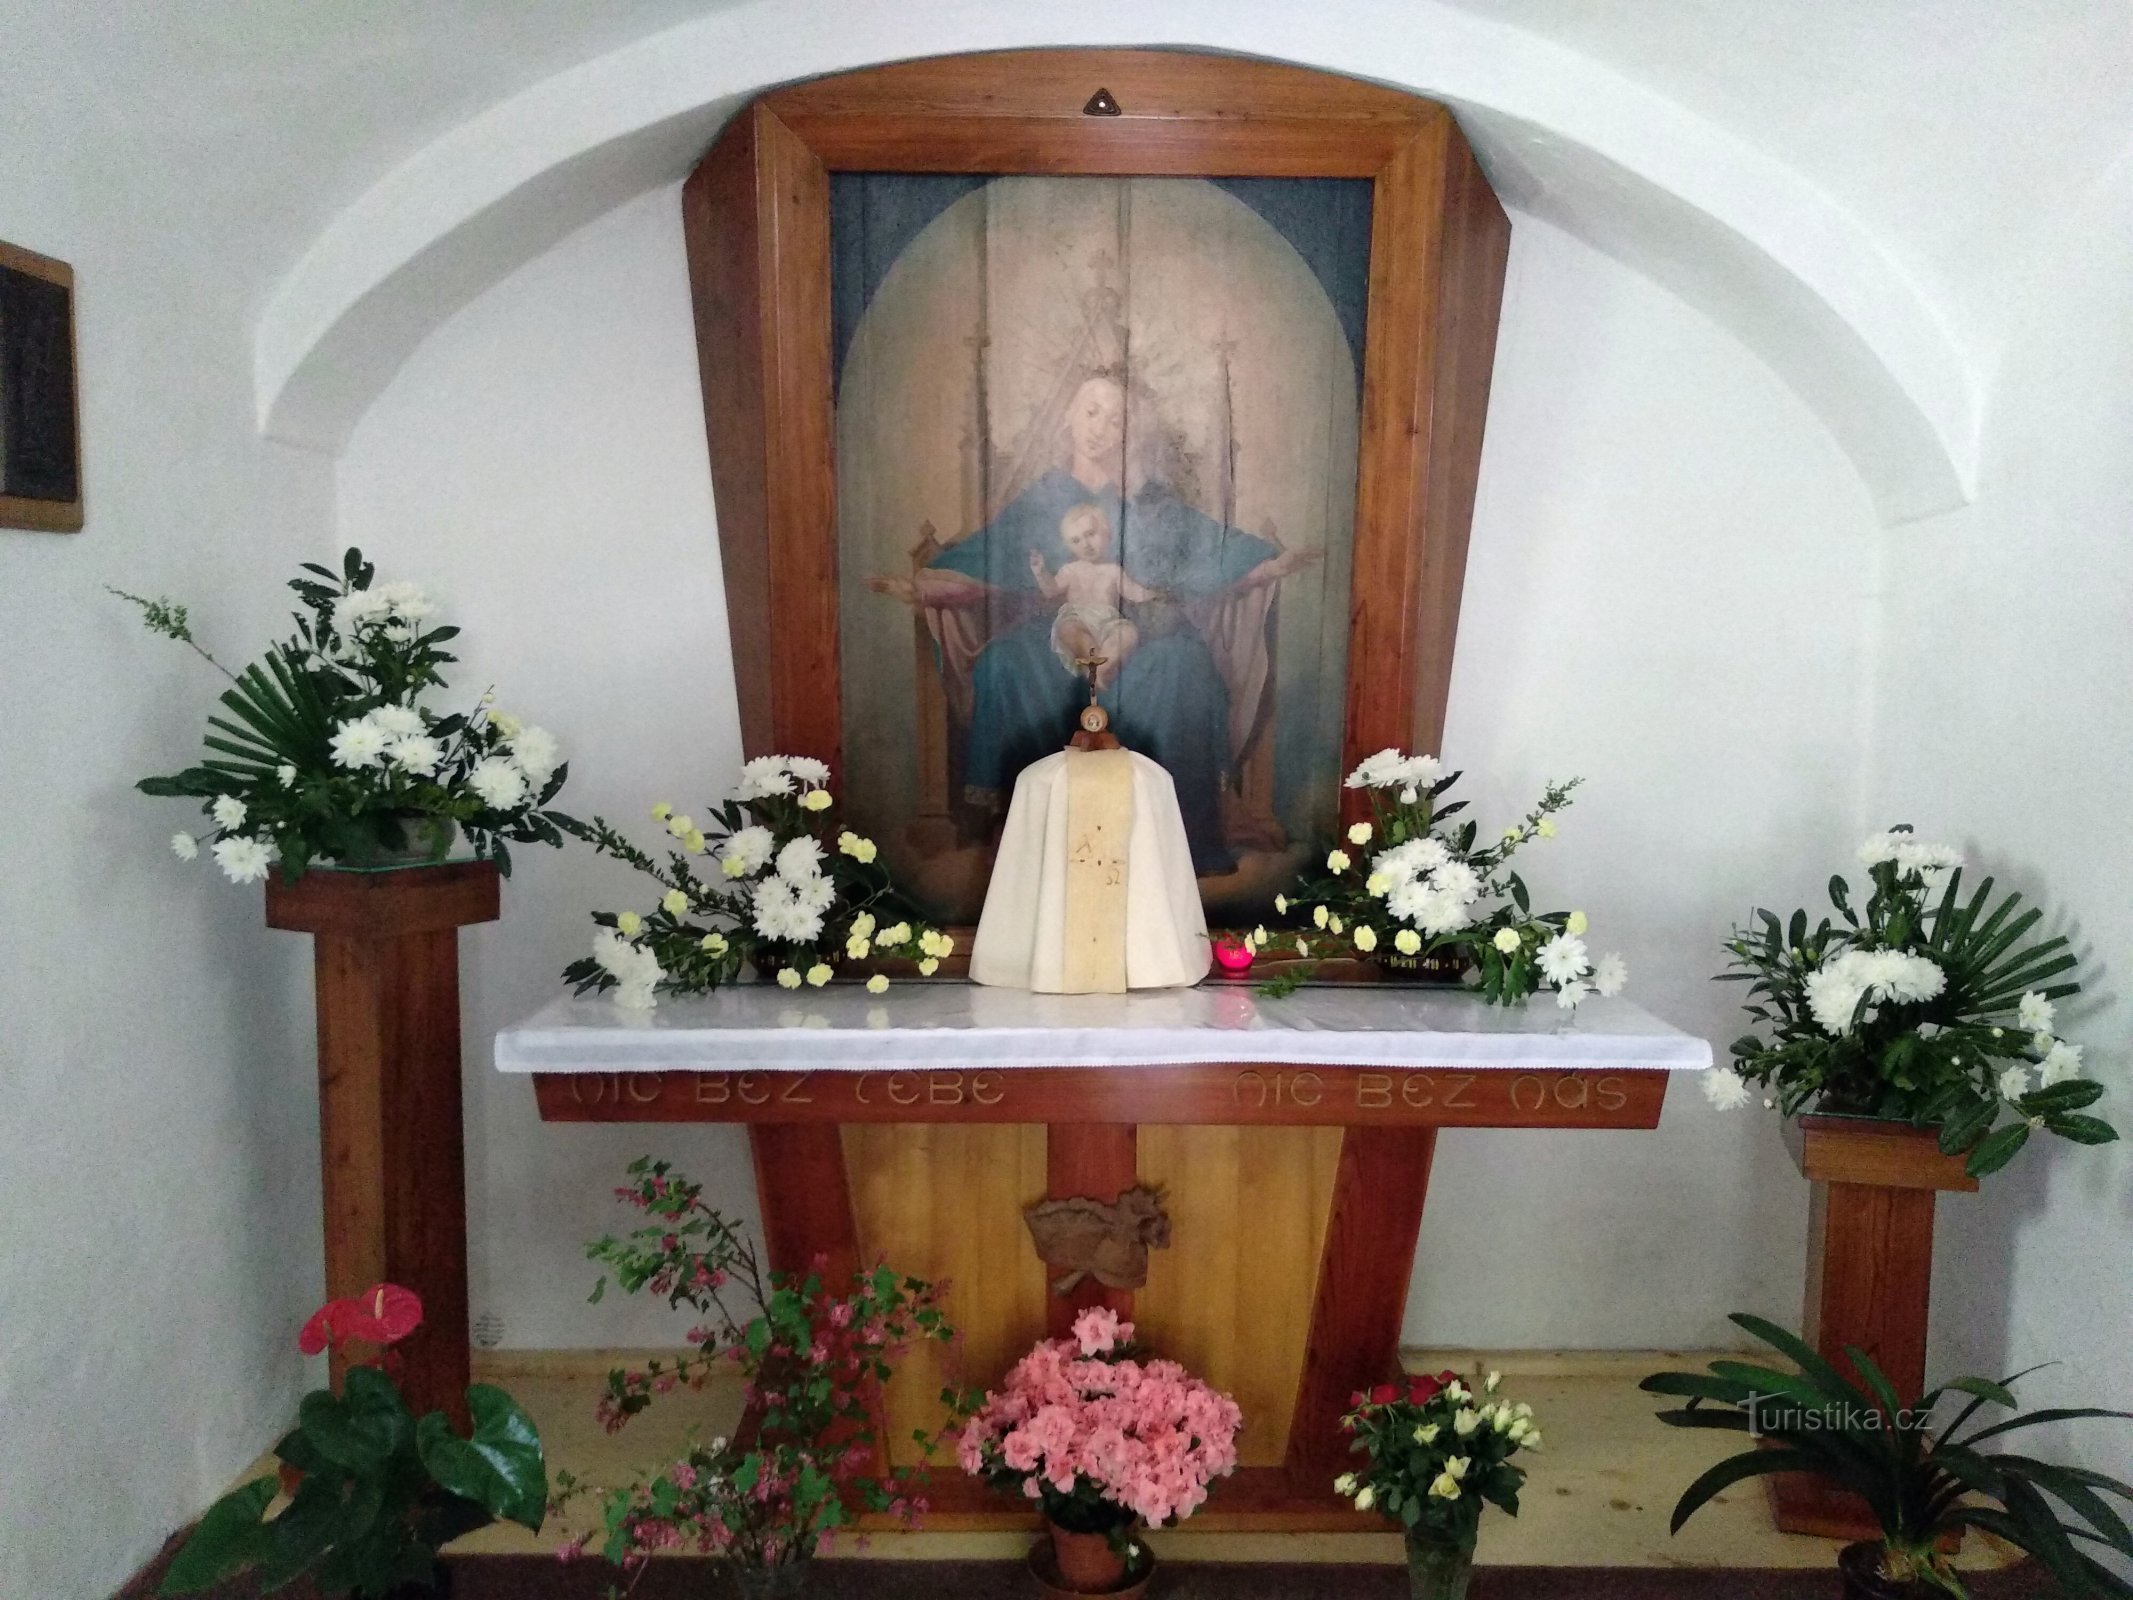 聖母ロコルスカ礼拝堂の内部